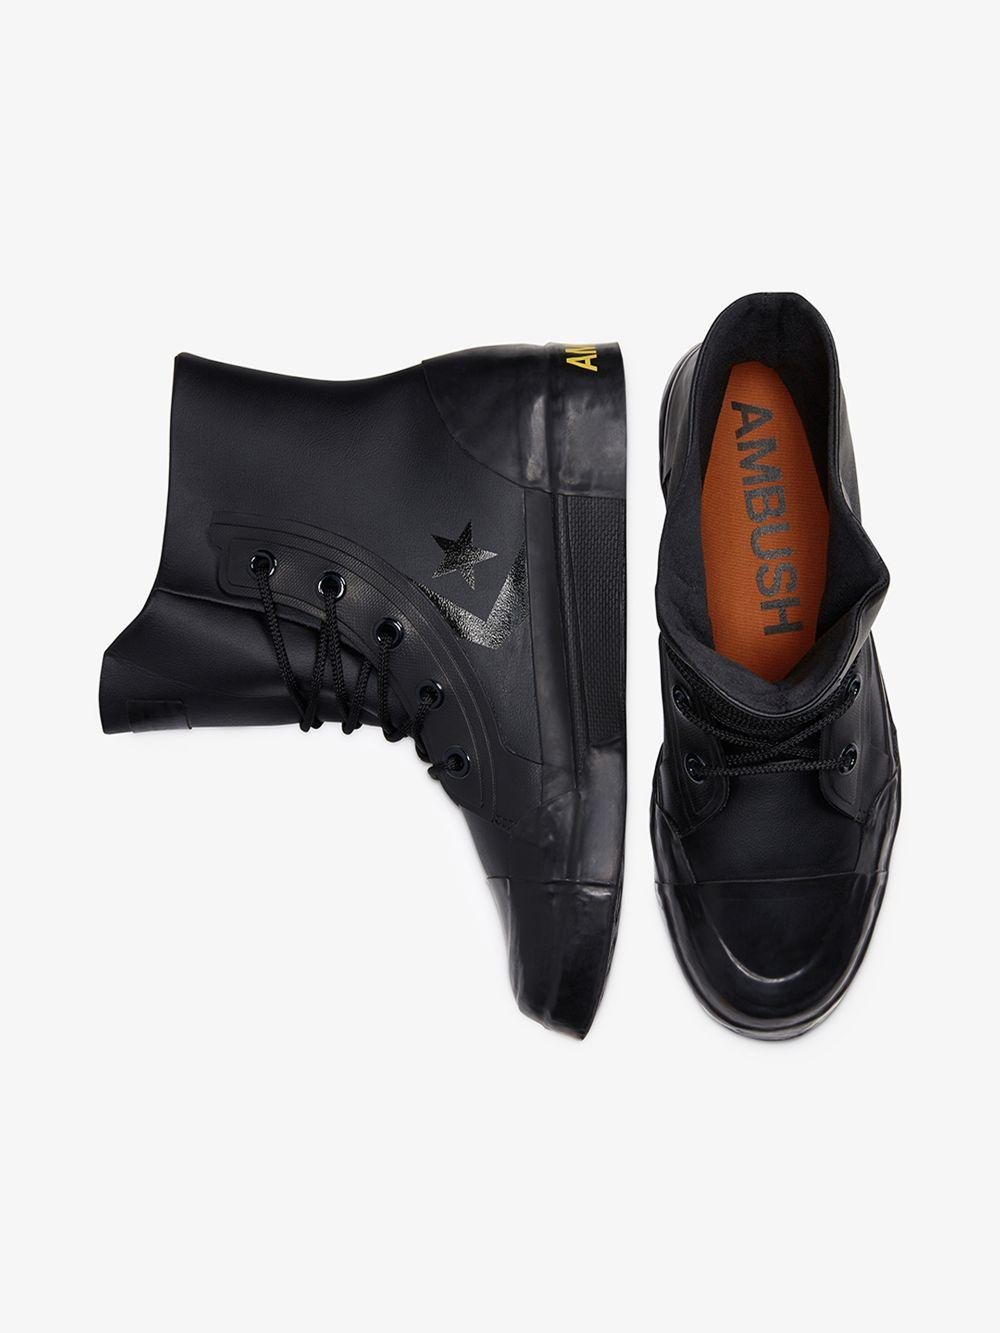 【破格】Converse×Ambush Pro Leather Hi Black スニーカー 靴 メンズ 【使い勝手の良い】